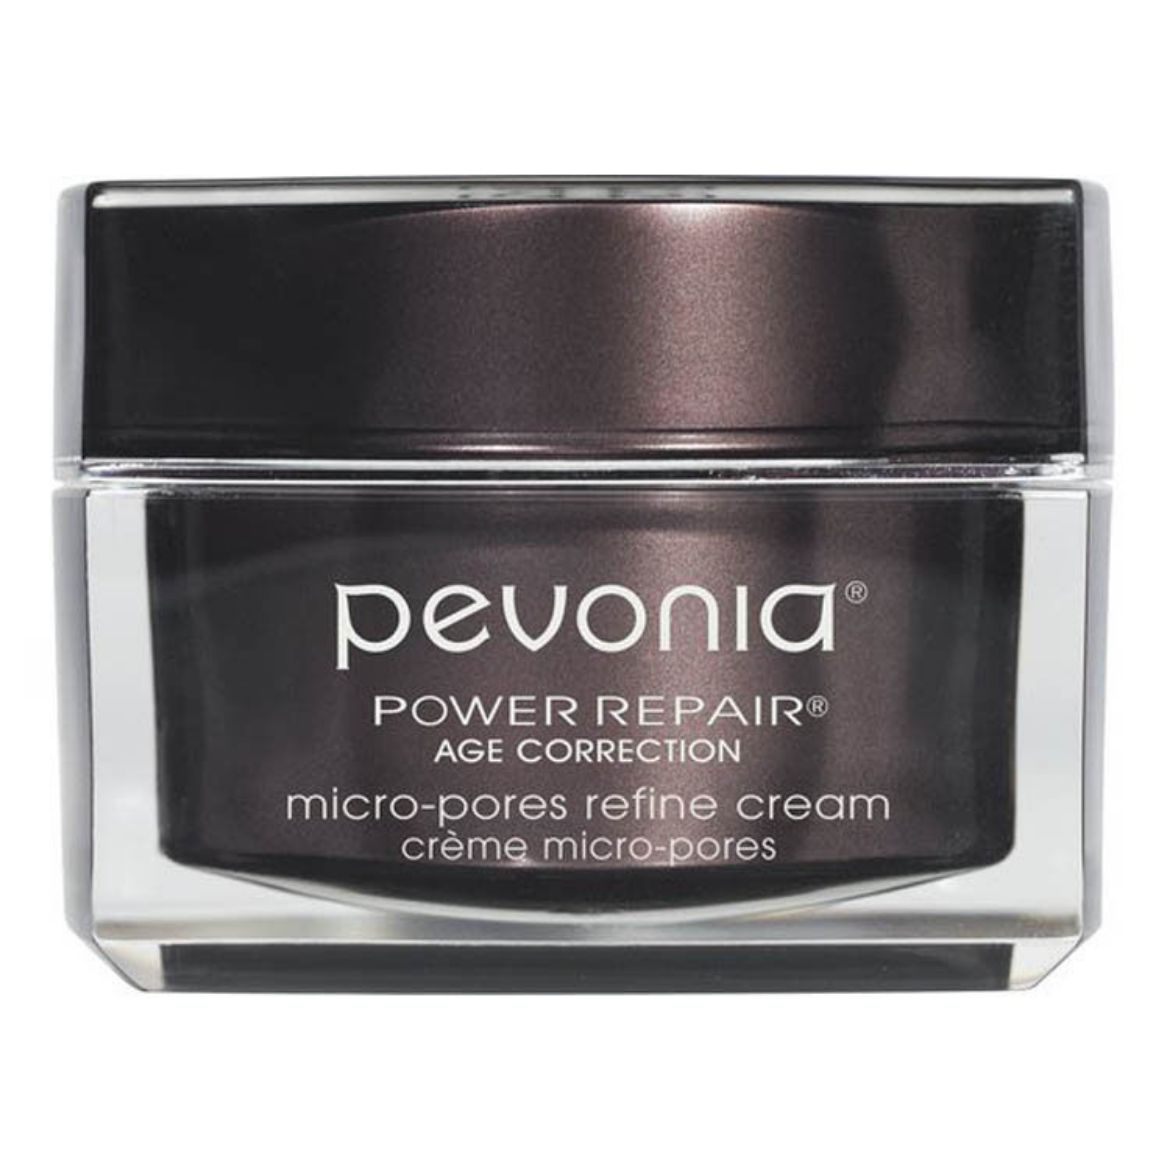 Image of Pevonia Power Repair Micro-Pores Refine Cream (50ml)